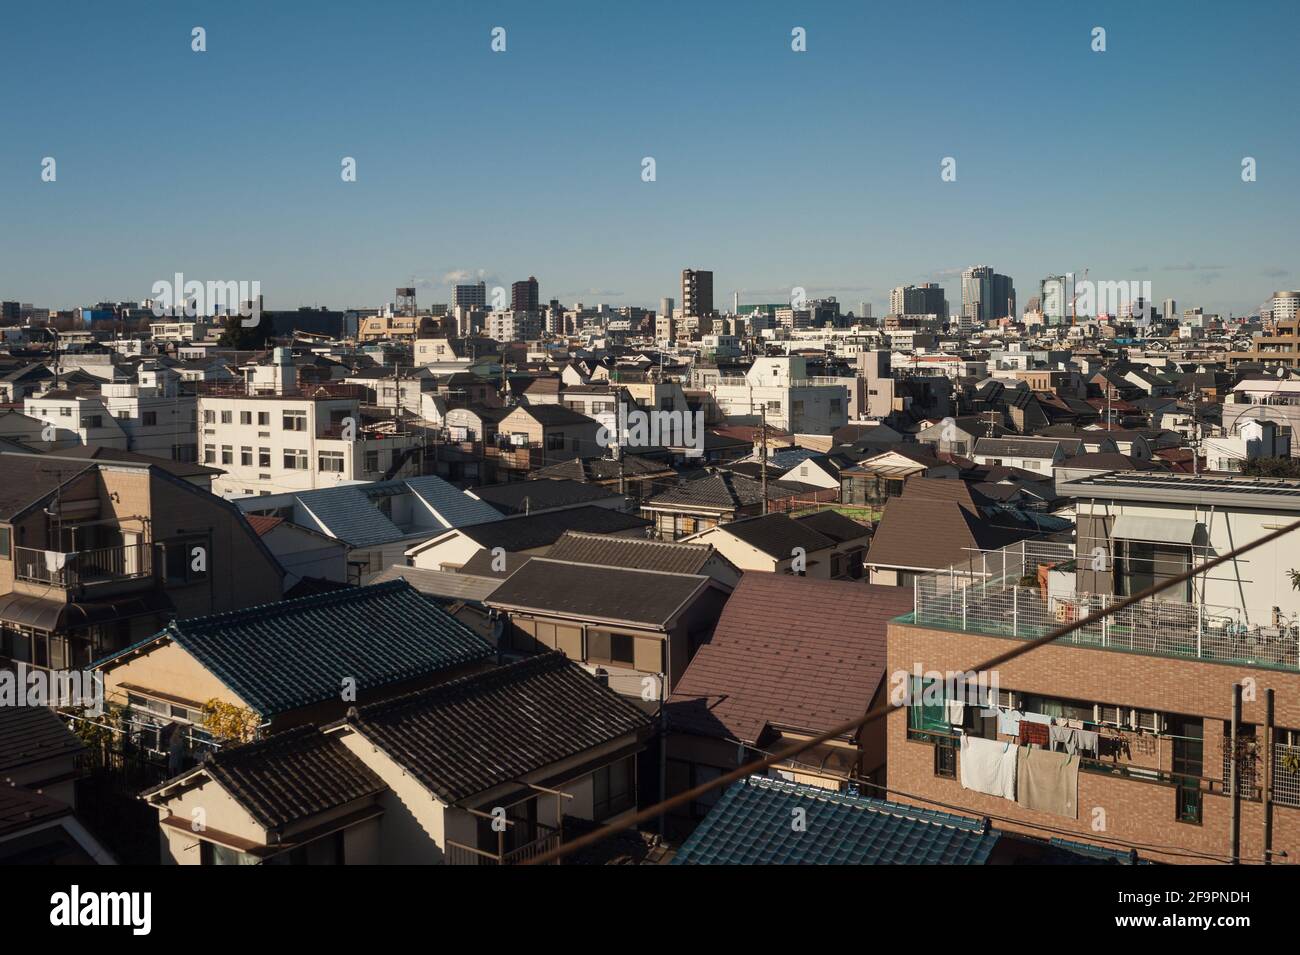 30.12.2017, Tokio, Tokio, Japan - eine erhöhte Ansicht von Wohngebäuden in der dicht besiedelten Metropolregion Tokio zwischen der Stadt Yokoh Stockfoto